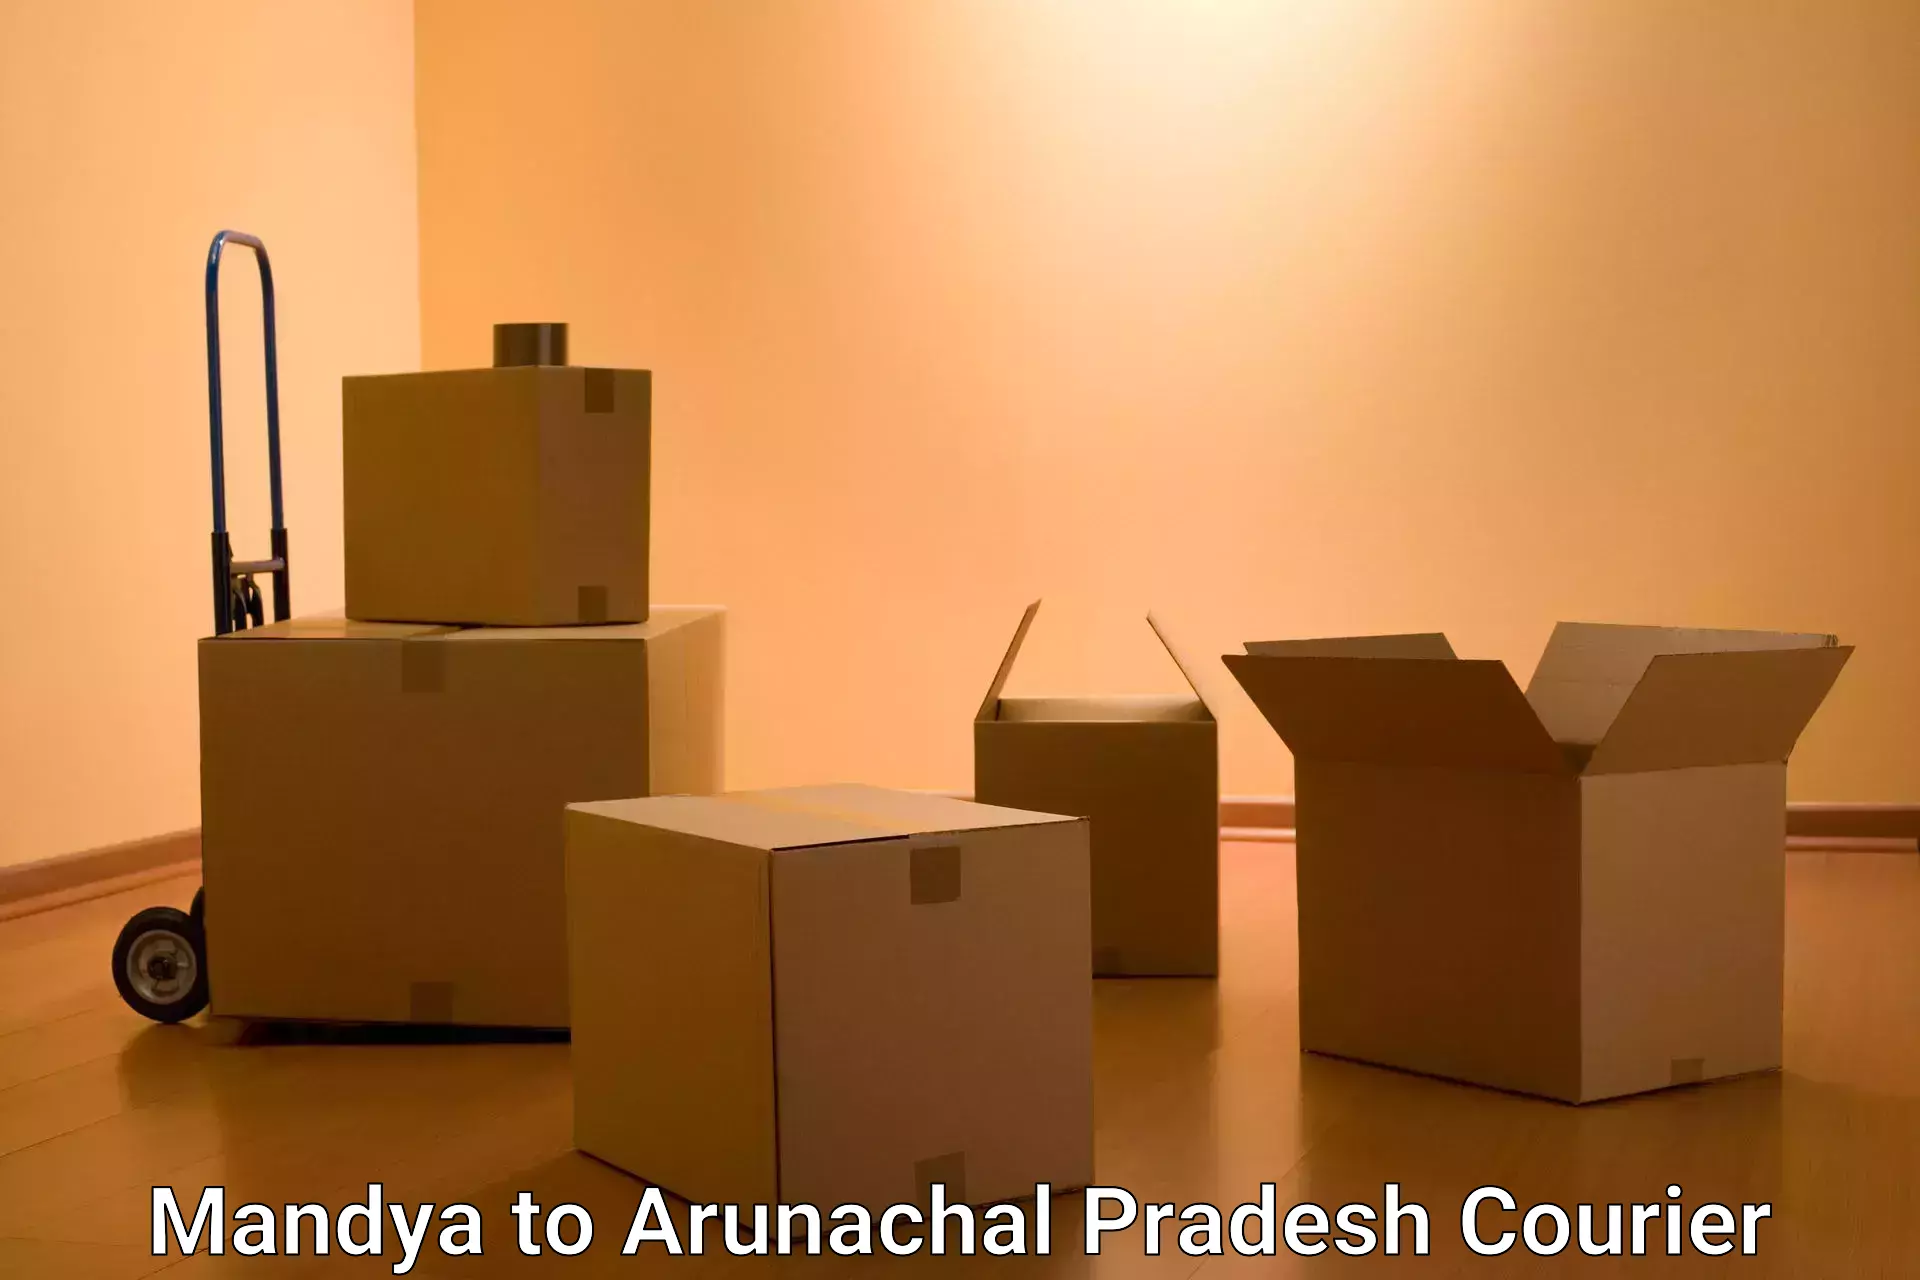 Urgent courier needs Mandya to Arunachal Pradesh